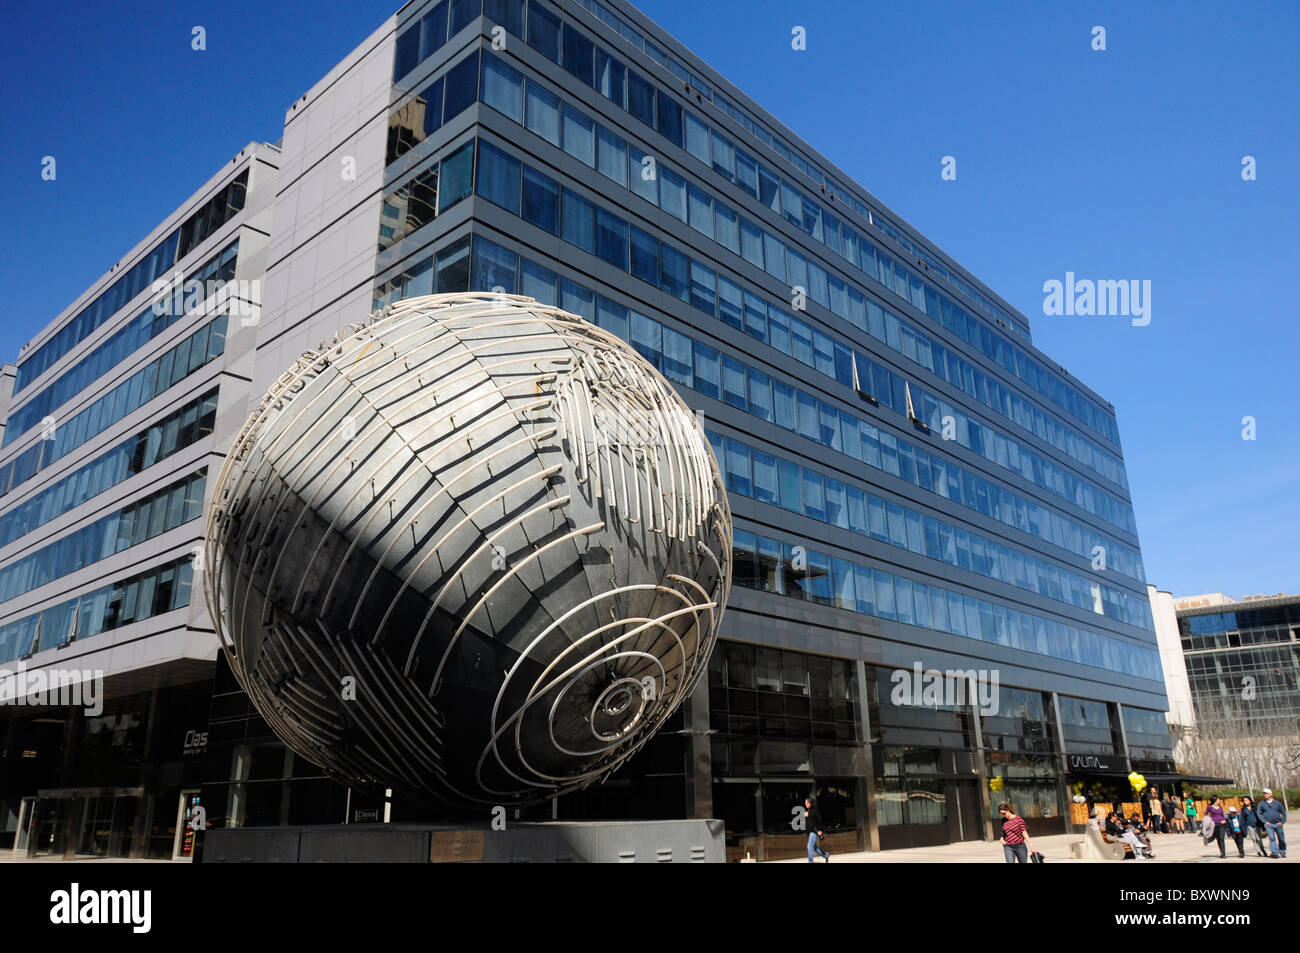 El sueño de la esfera (The Dream of the Sphere) by Eduardo Pla in Puerto Madero, Buenos Aires Stock Photo